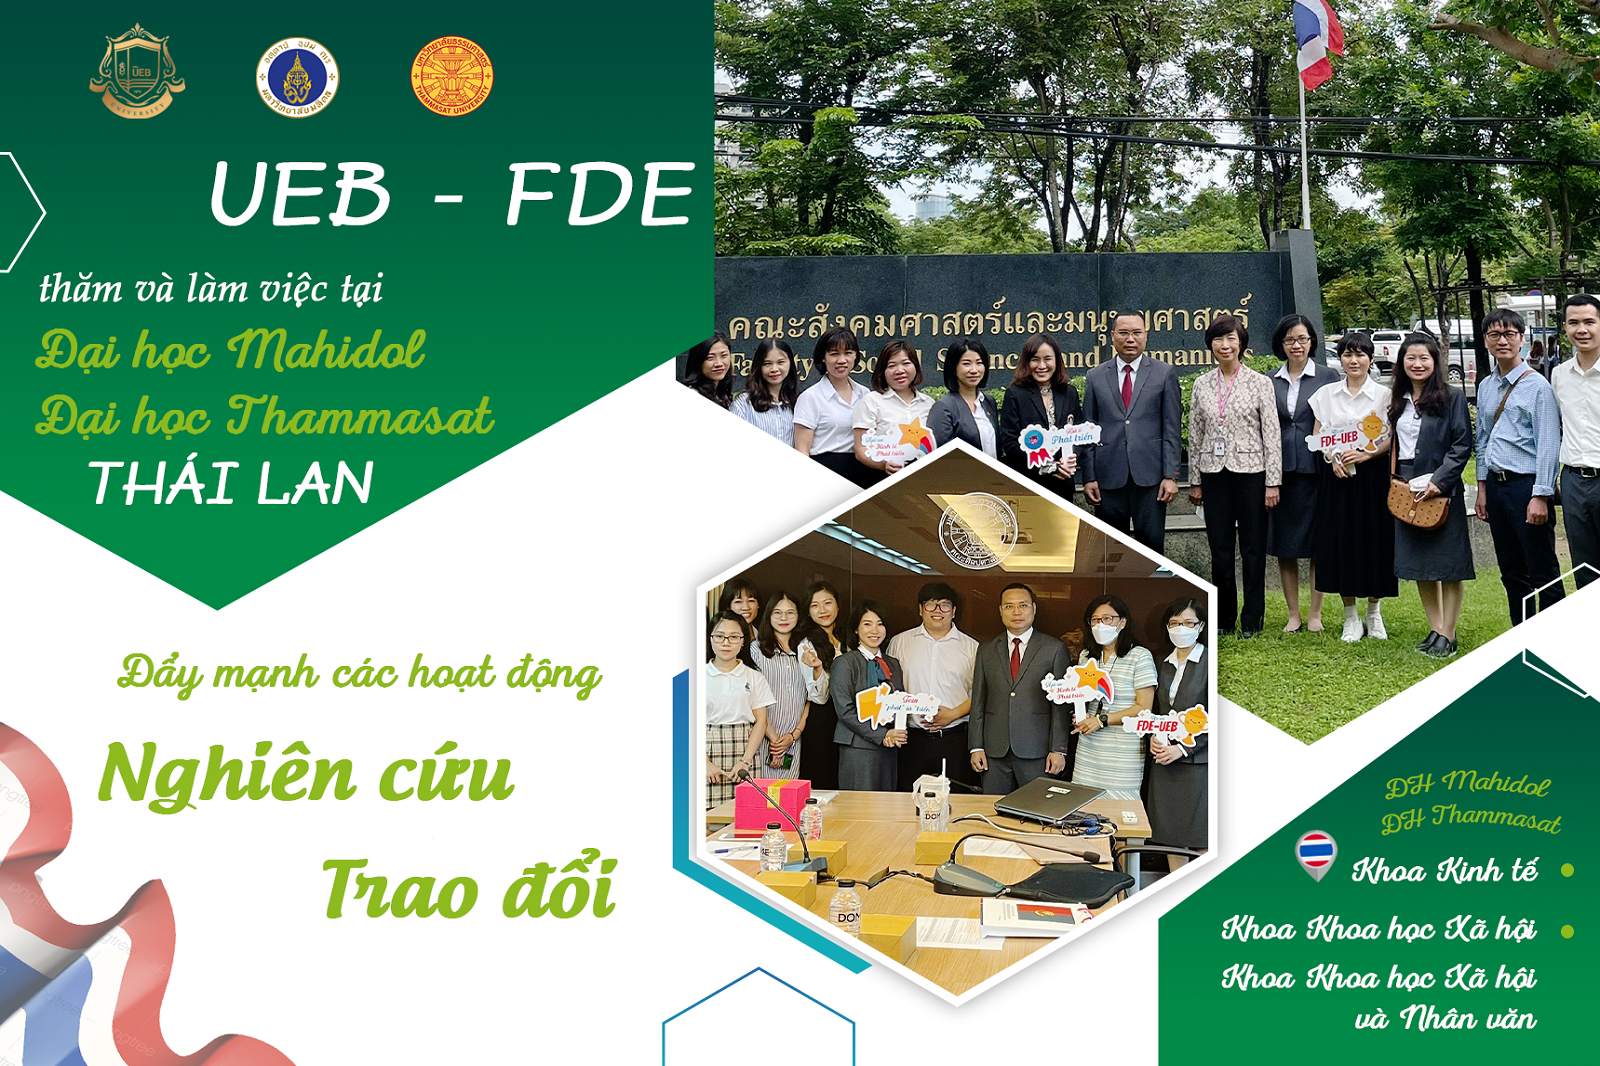 Trường ĐH Kinh tế - ĐHQGHN thăm và làm việc tại ĐH Thammasat và ĐH Mahidol, Thái Lan nhằm đẩy mạnh các hoạt động hợp tác quốc tế trong nghiên cứu và trao đổi